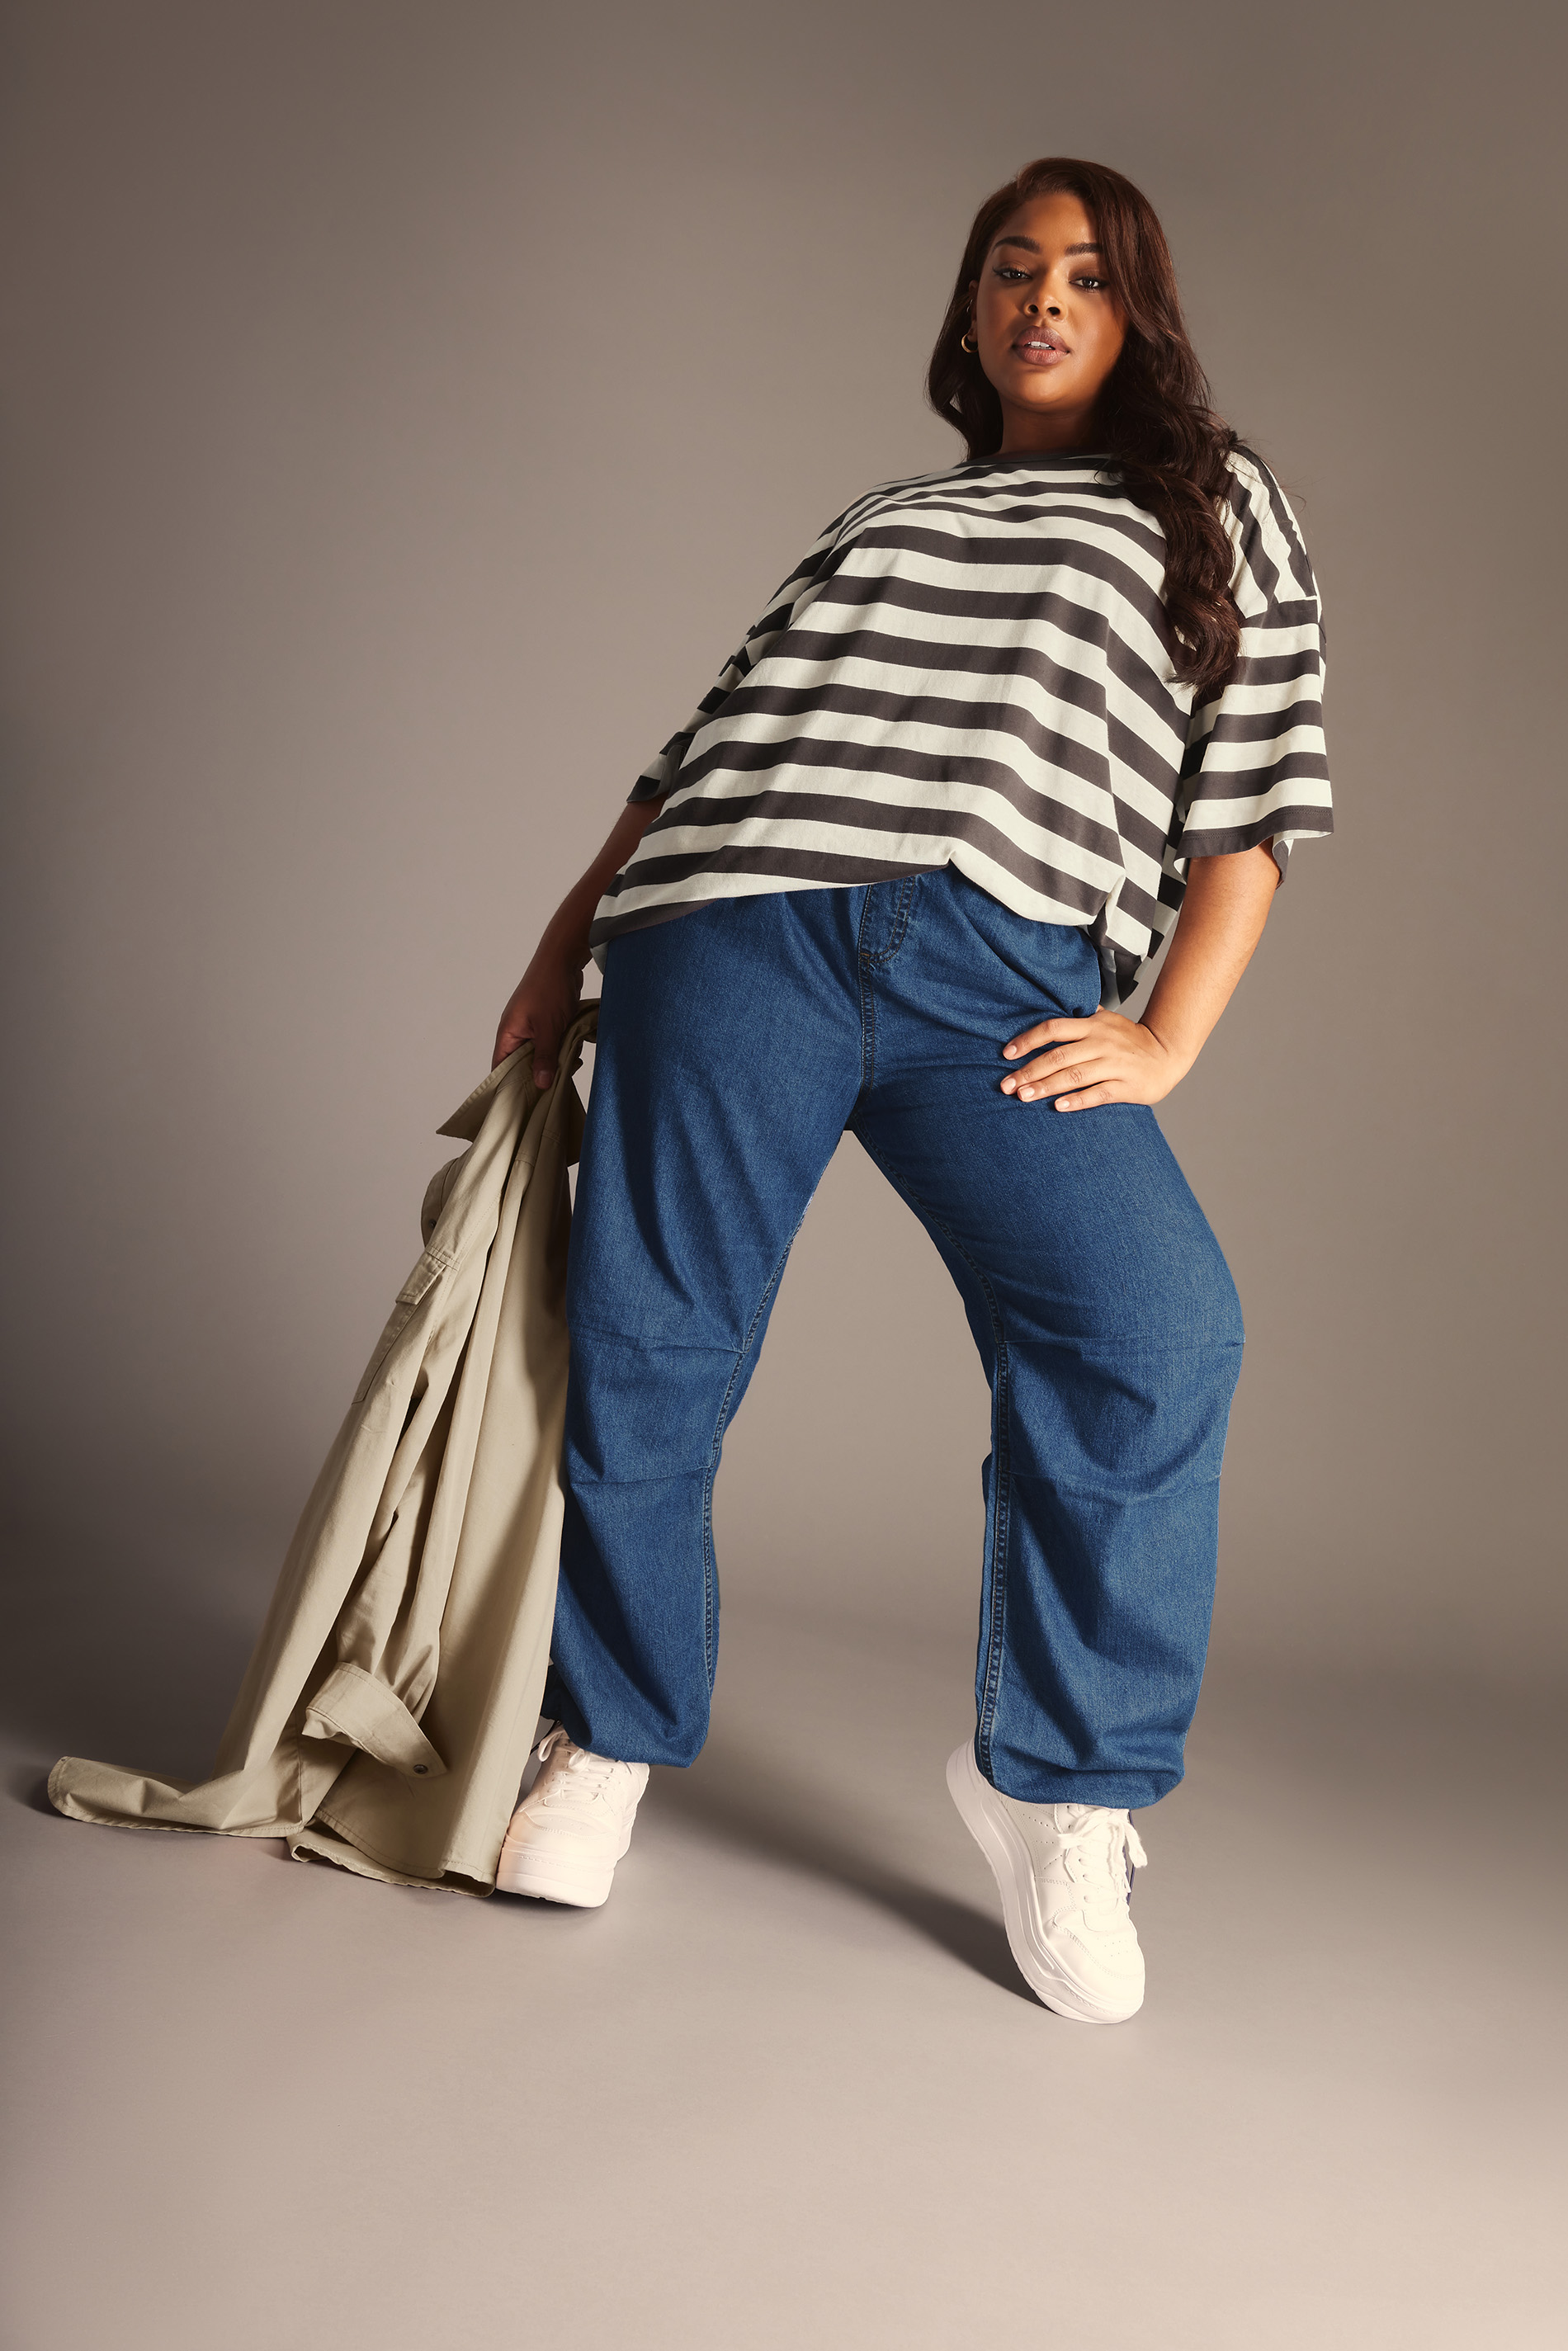 YOURS Curve Plus Size Denim Parachute Jeans | Yours Clothing  1